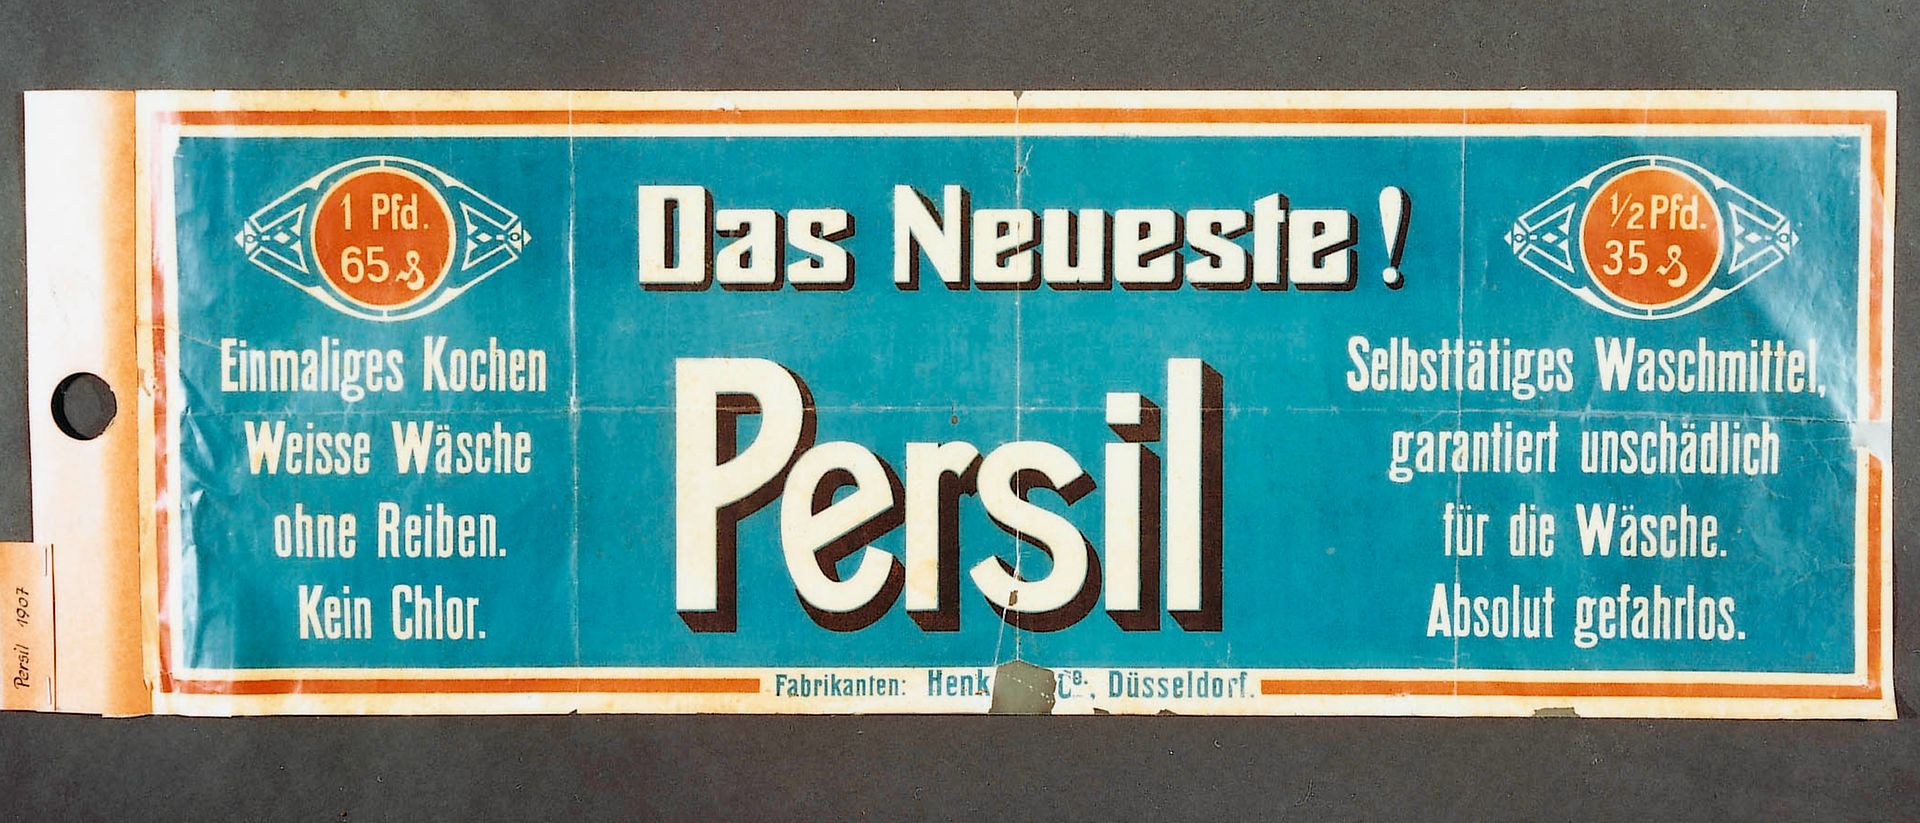 
Eines der ersten Werbeplakate von Persil aus dem Jahr 1907.